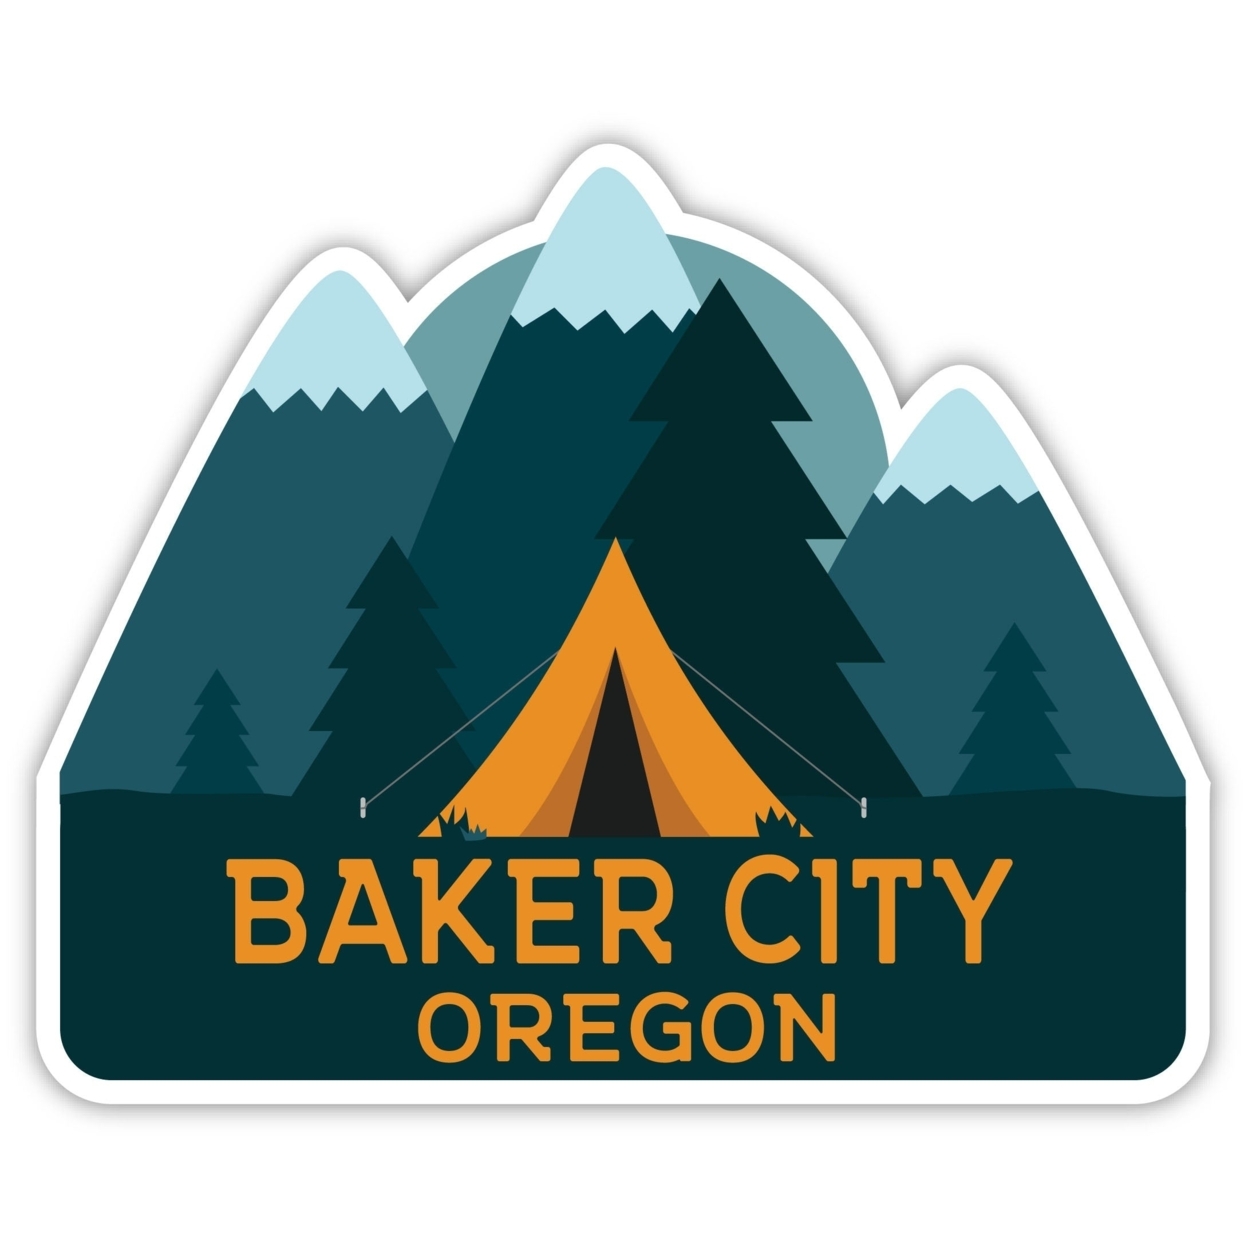 Baker City Oregon Souvenir Decorative Stickers (Choose Theme And Size) - Single Unit, 8-Inch, Tent